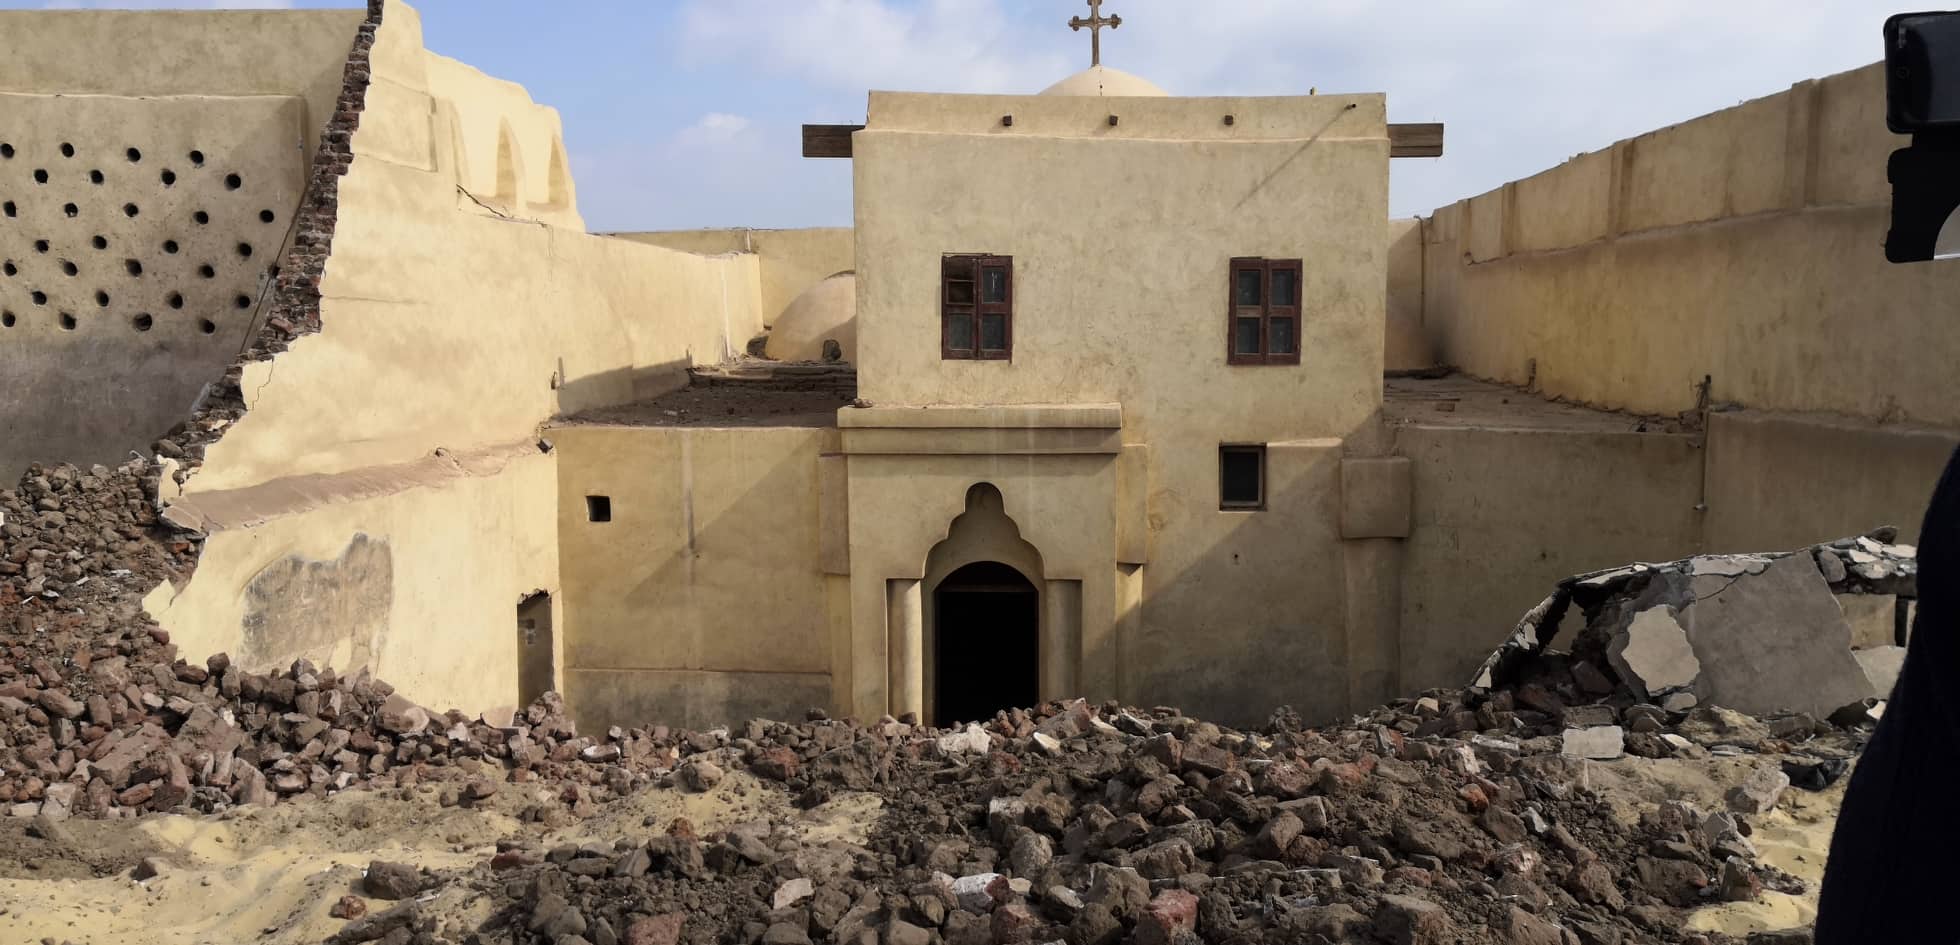   وزارة الآثار تحيل واقعة انهيار سور دير أبو فانا للنيابة العامة وتؤكد مخاطبتها لمطرانية عدة مرات لترميم منذ عام